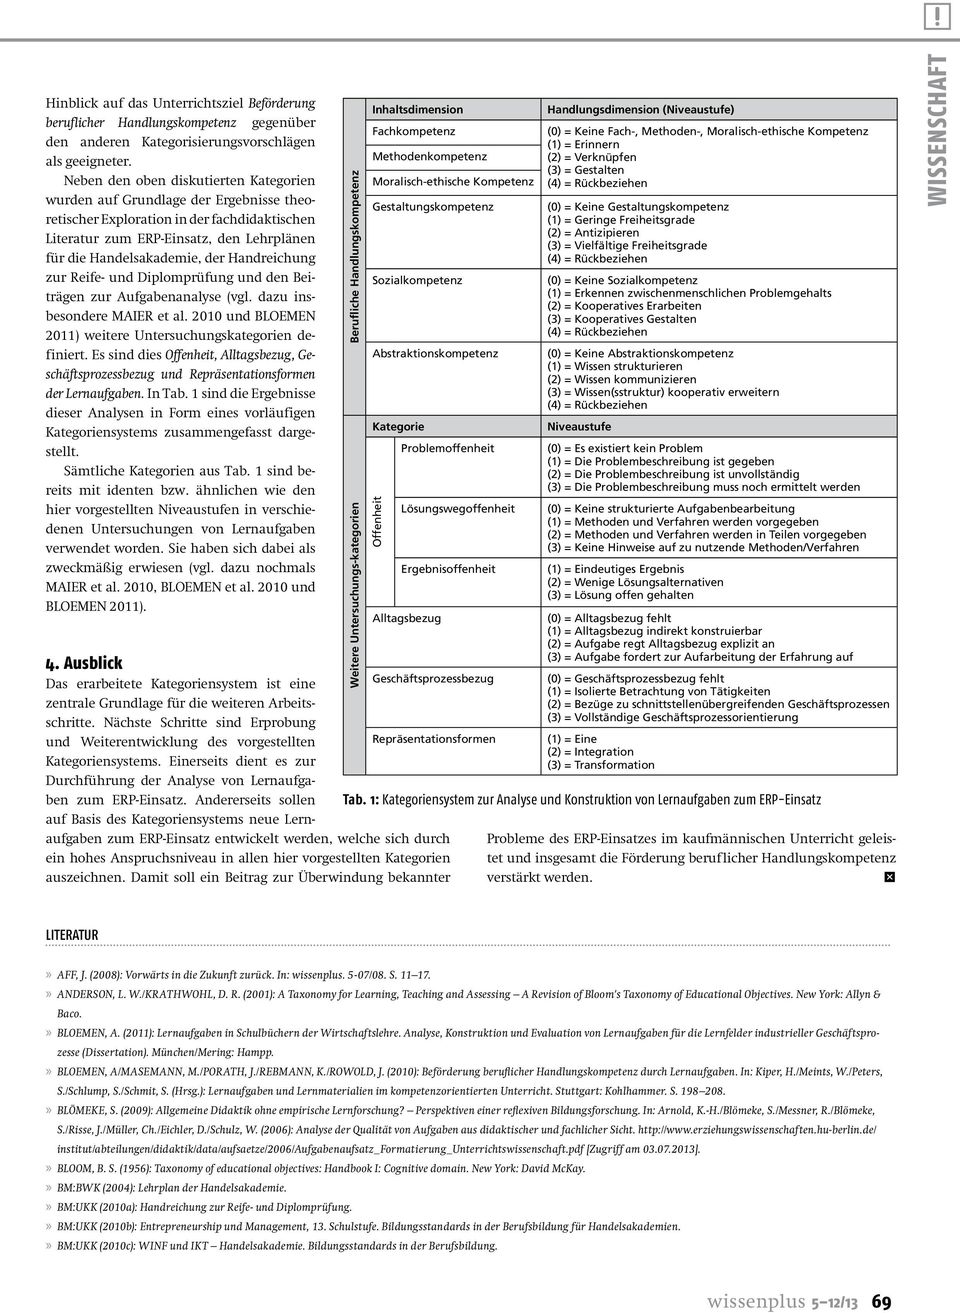 Handreichung zur Reife- und Diplomprüfung und den Beiträgen zur Aufgabenanalyse (vgl. dazu insbesondere MAIER et al. 2010 und BLOEMEN 2011) weitere Untersuchungskategorien definiert.